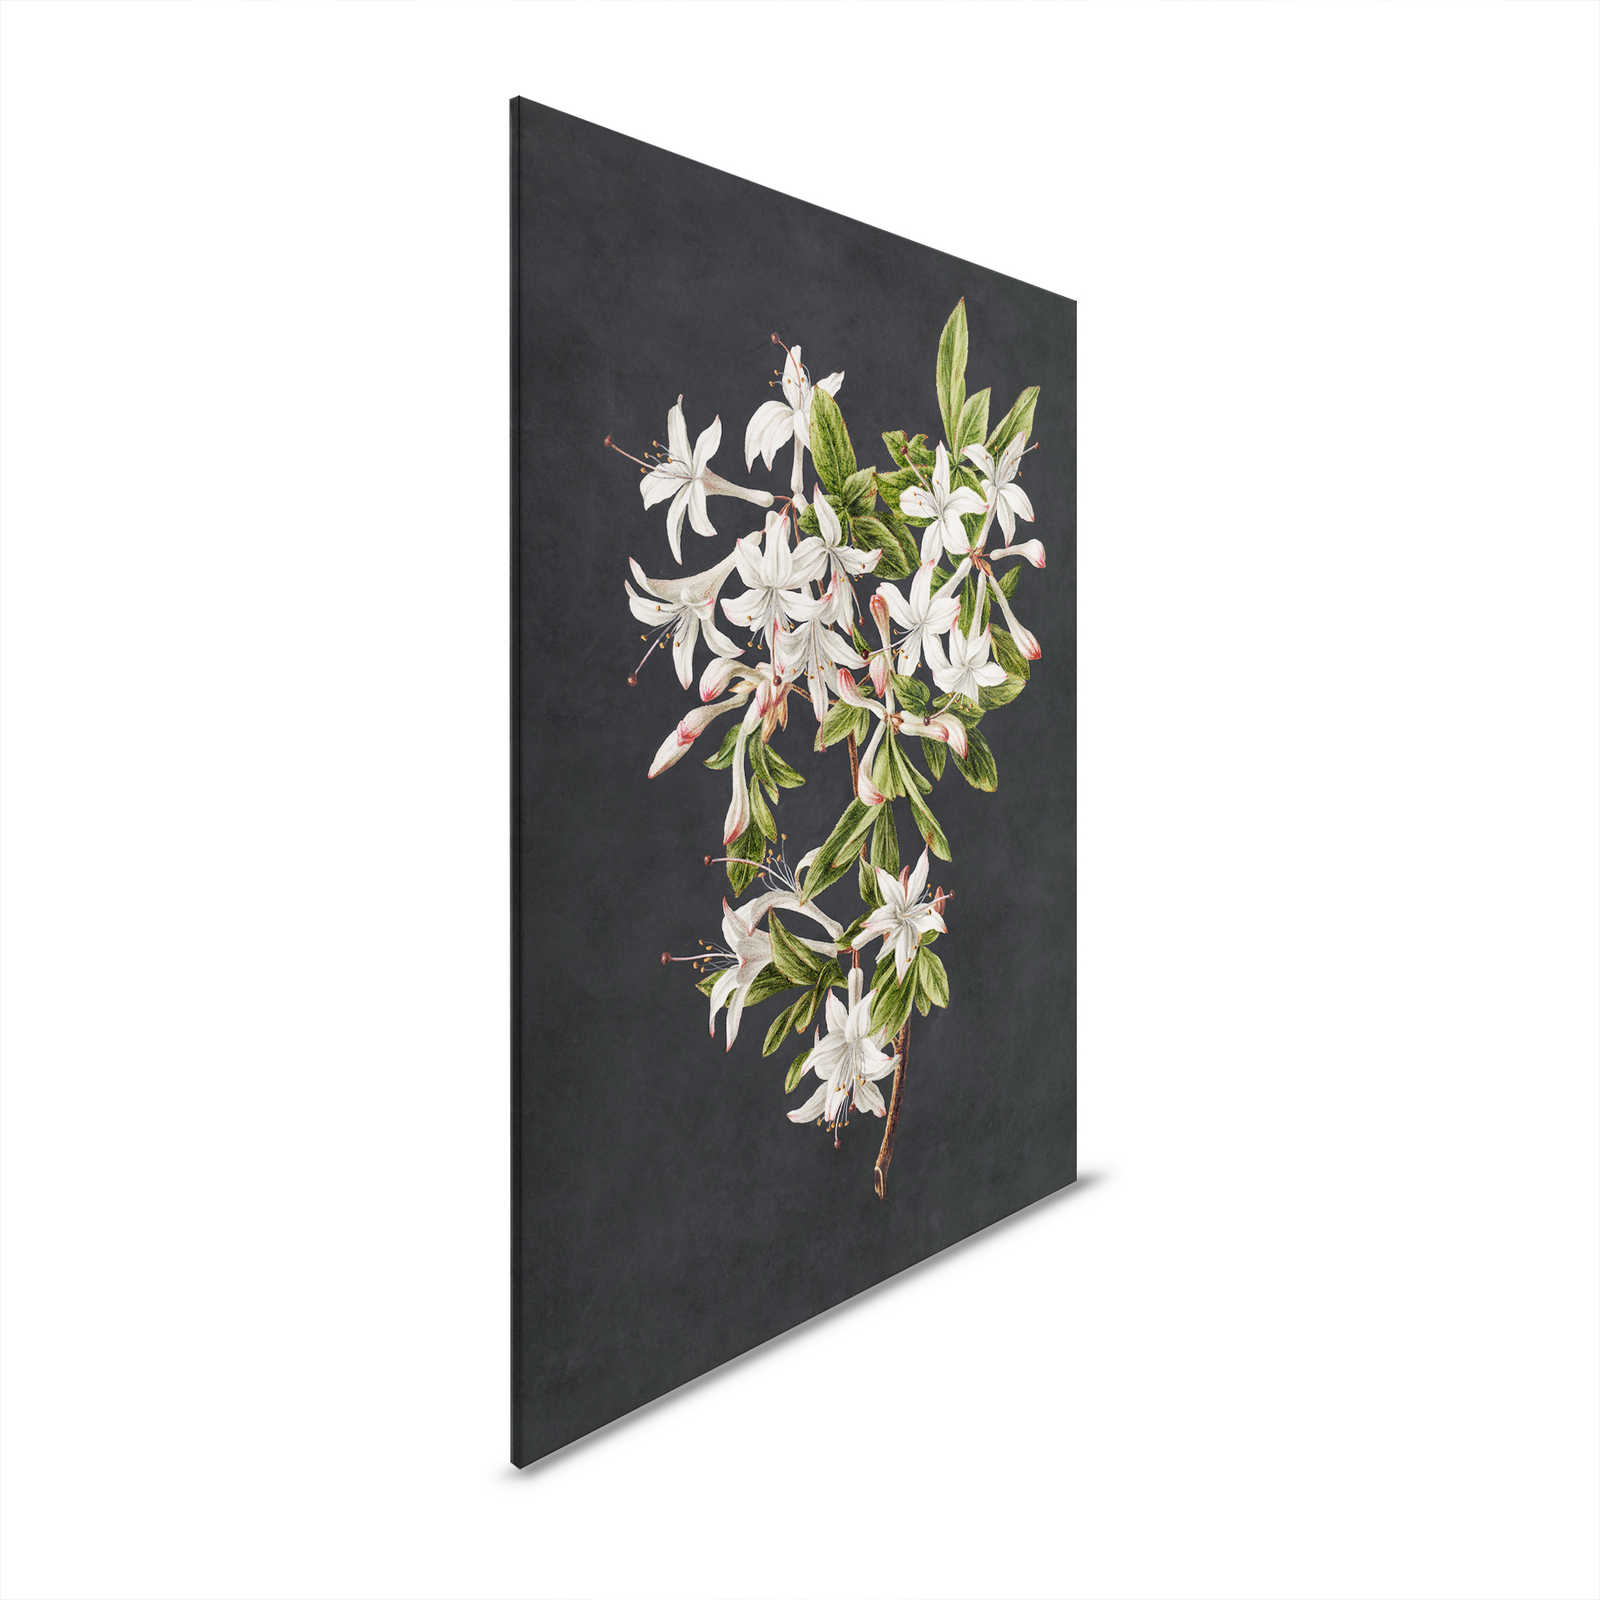 Midnight Garden 2 - Schwarzes Leinwandbild Blütenzweig weiße Blumen – 0,80 m x 1,20 m
